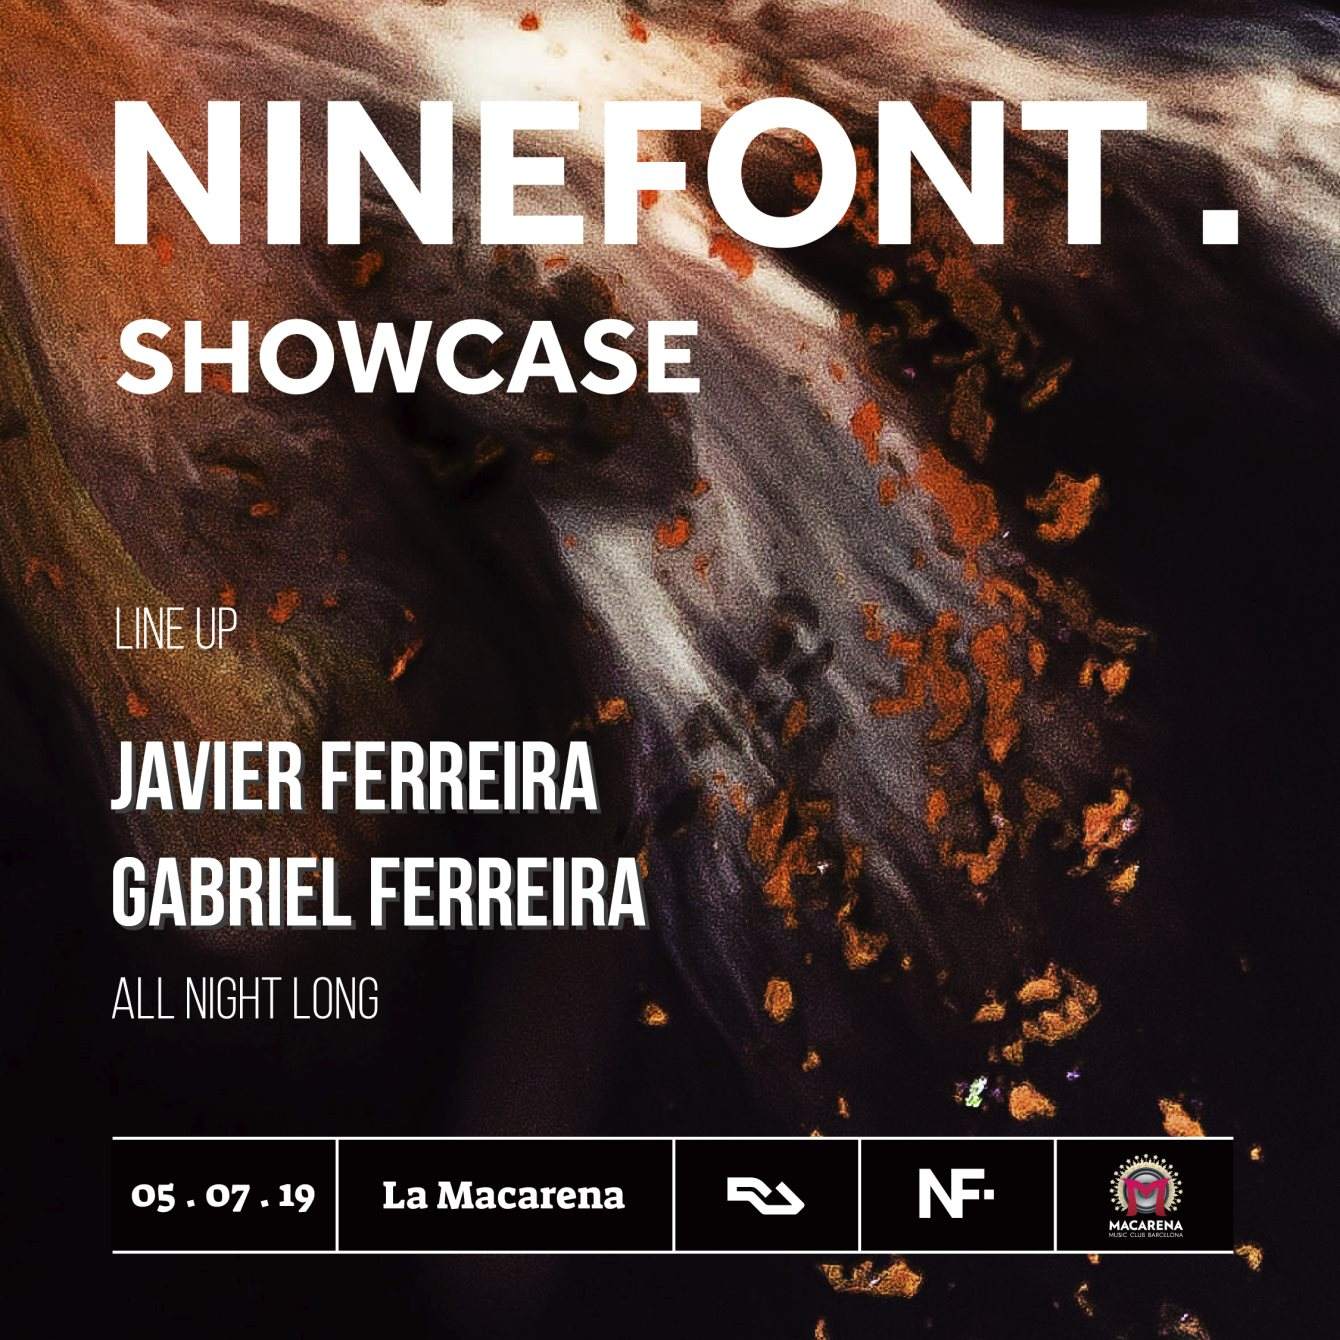 Ninefont Showcase - フライヤー表